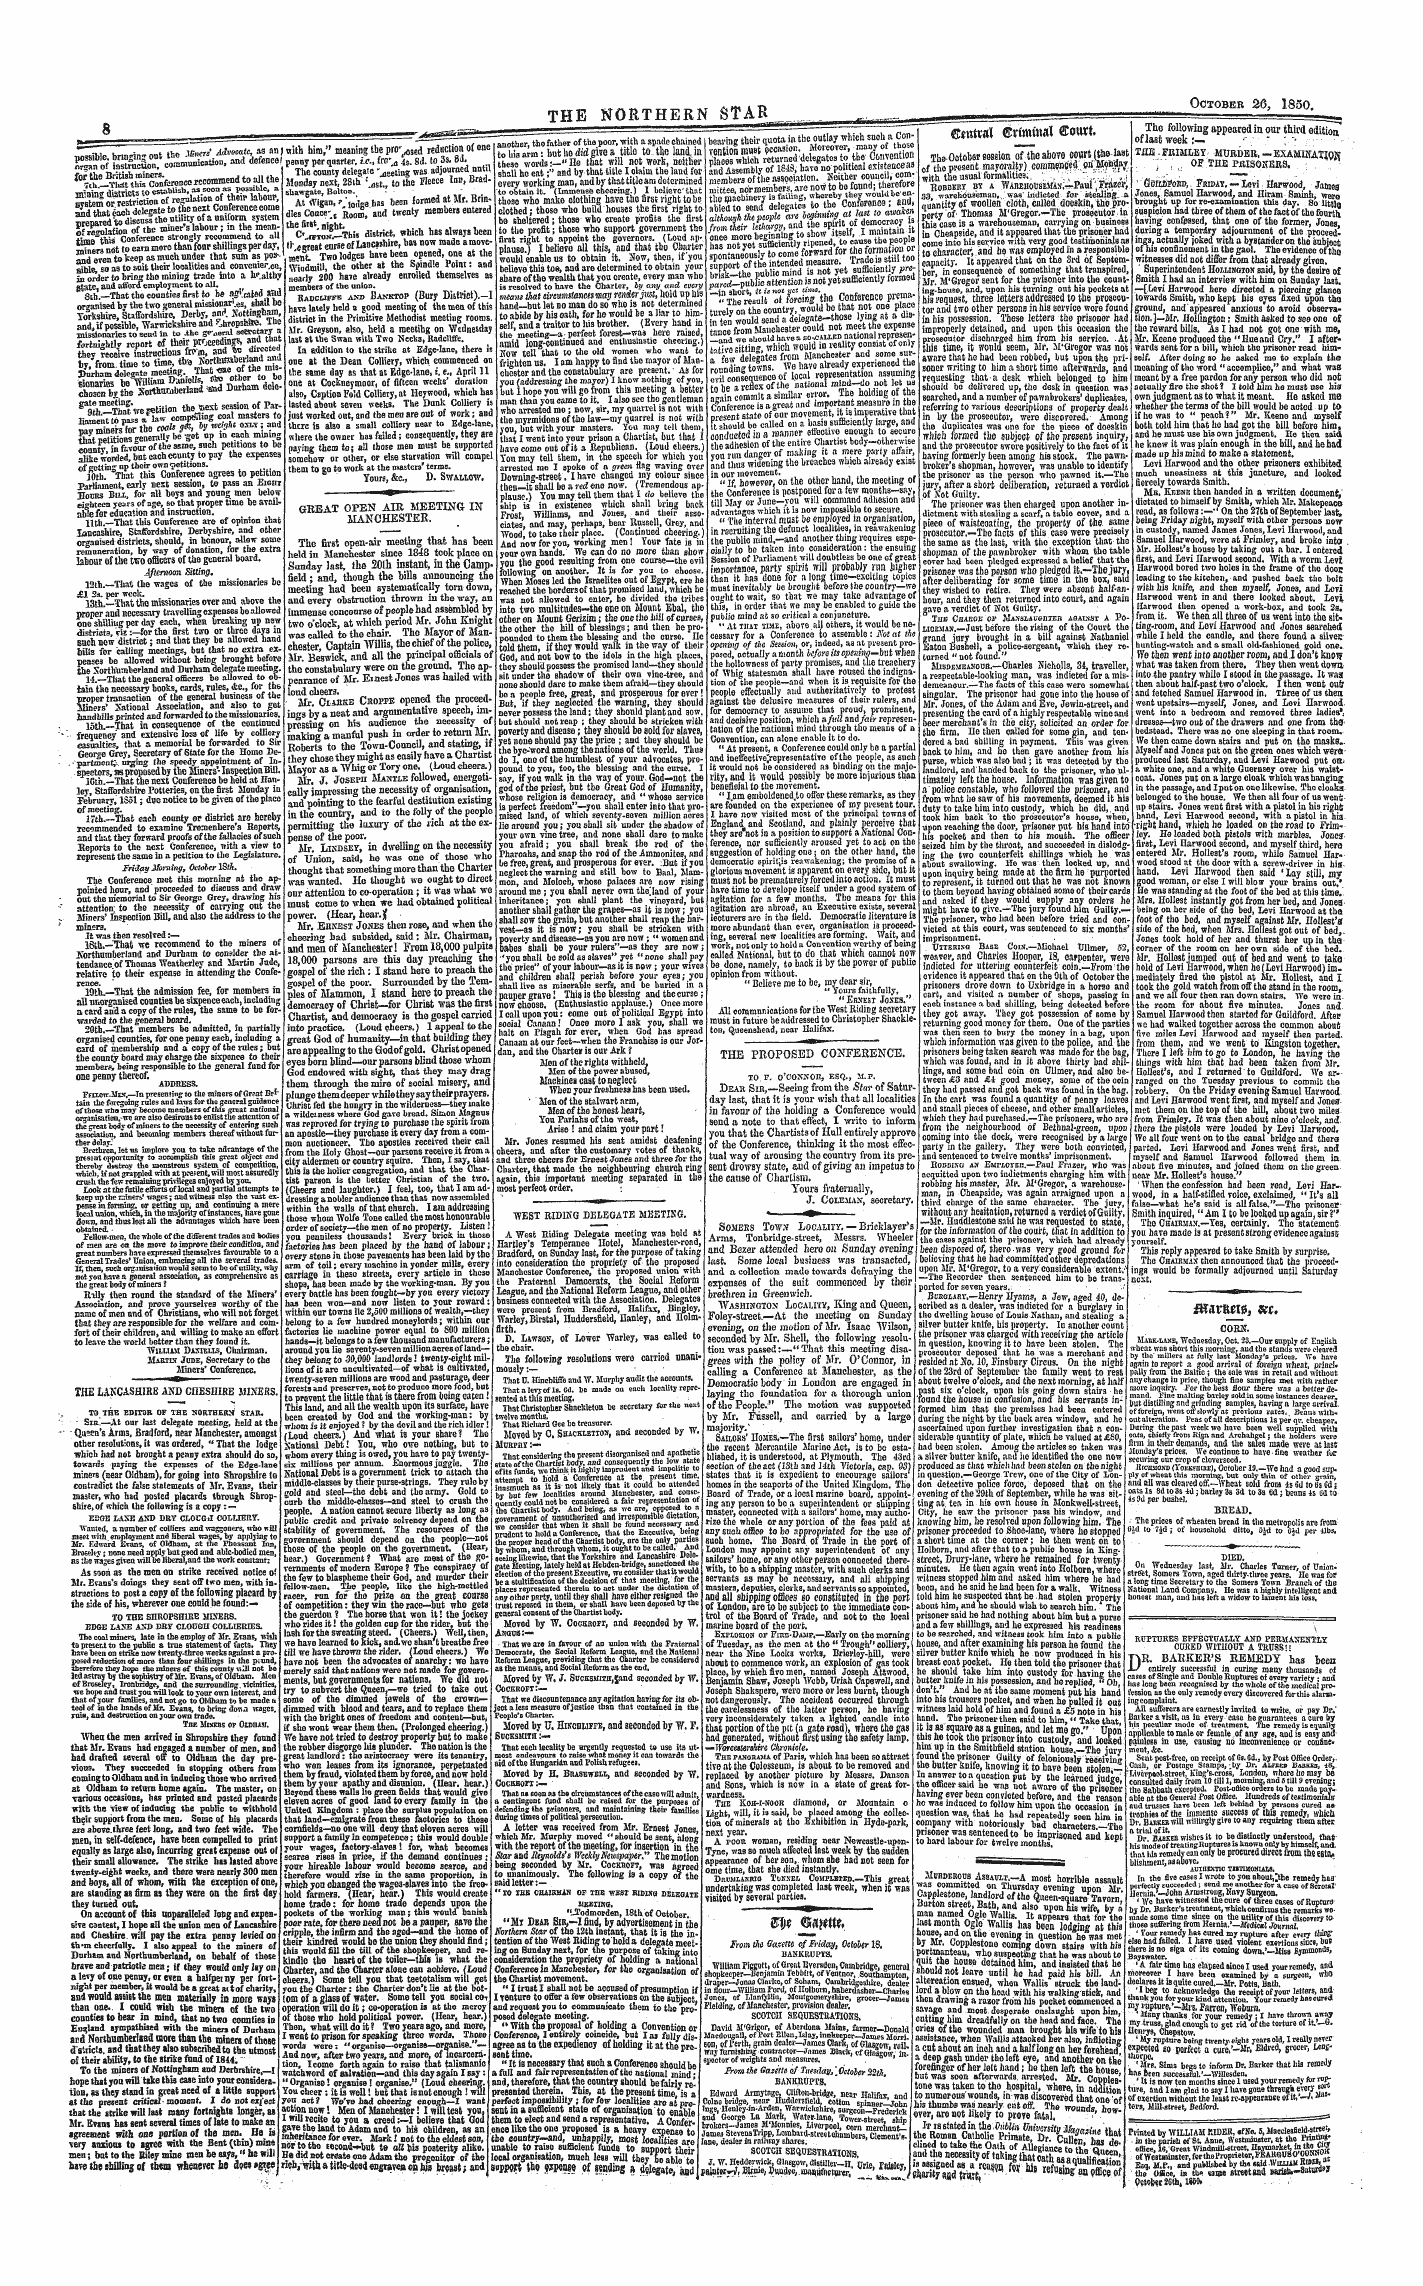 Northern Star (1837-1852): jS F Y, 1st edition - Cwtval ©Rimmal ©Outt _ *» &Lt;U...Y *;* ,.. - »«."?.,«R Optiuvi